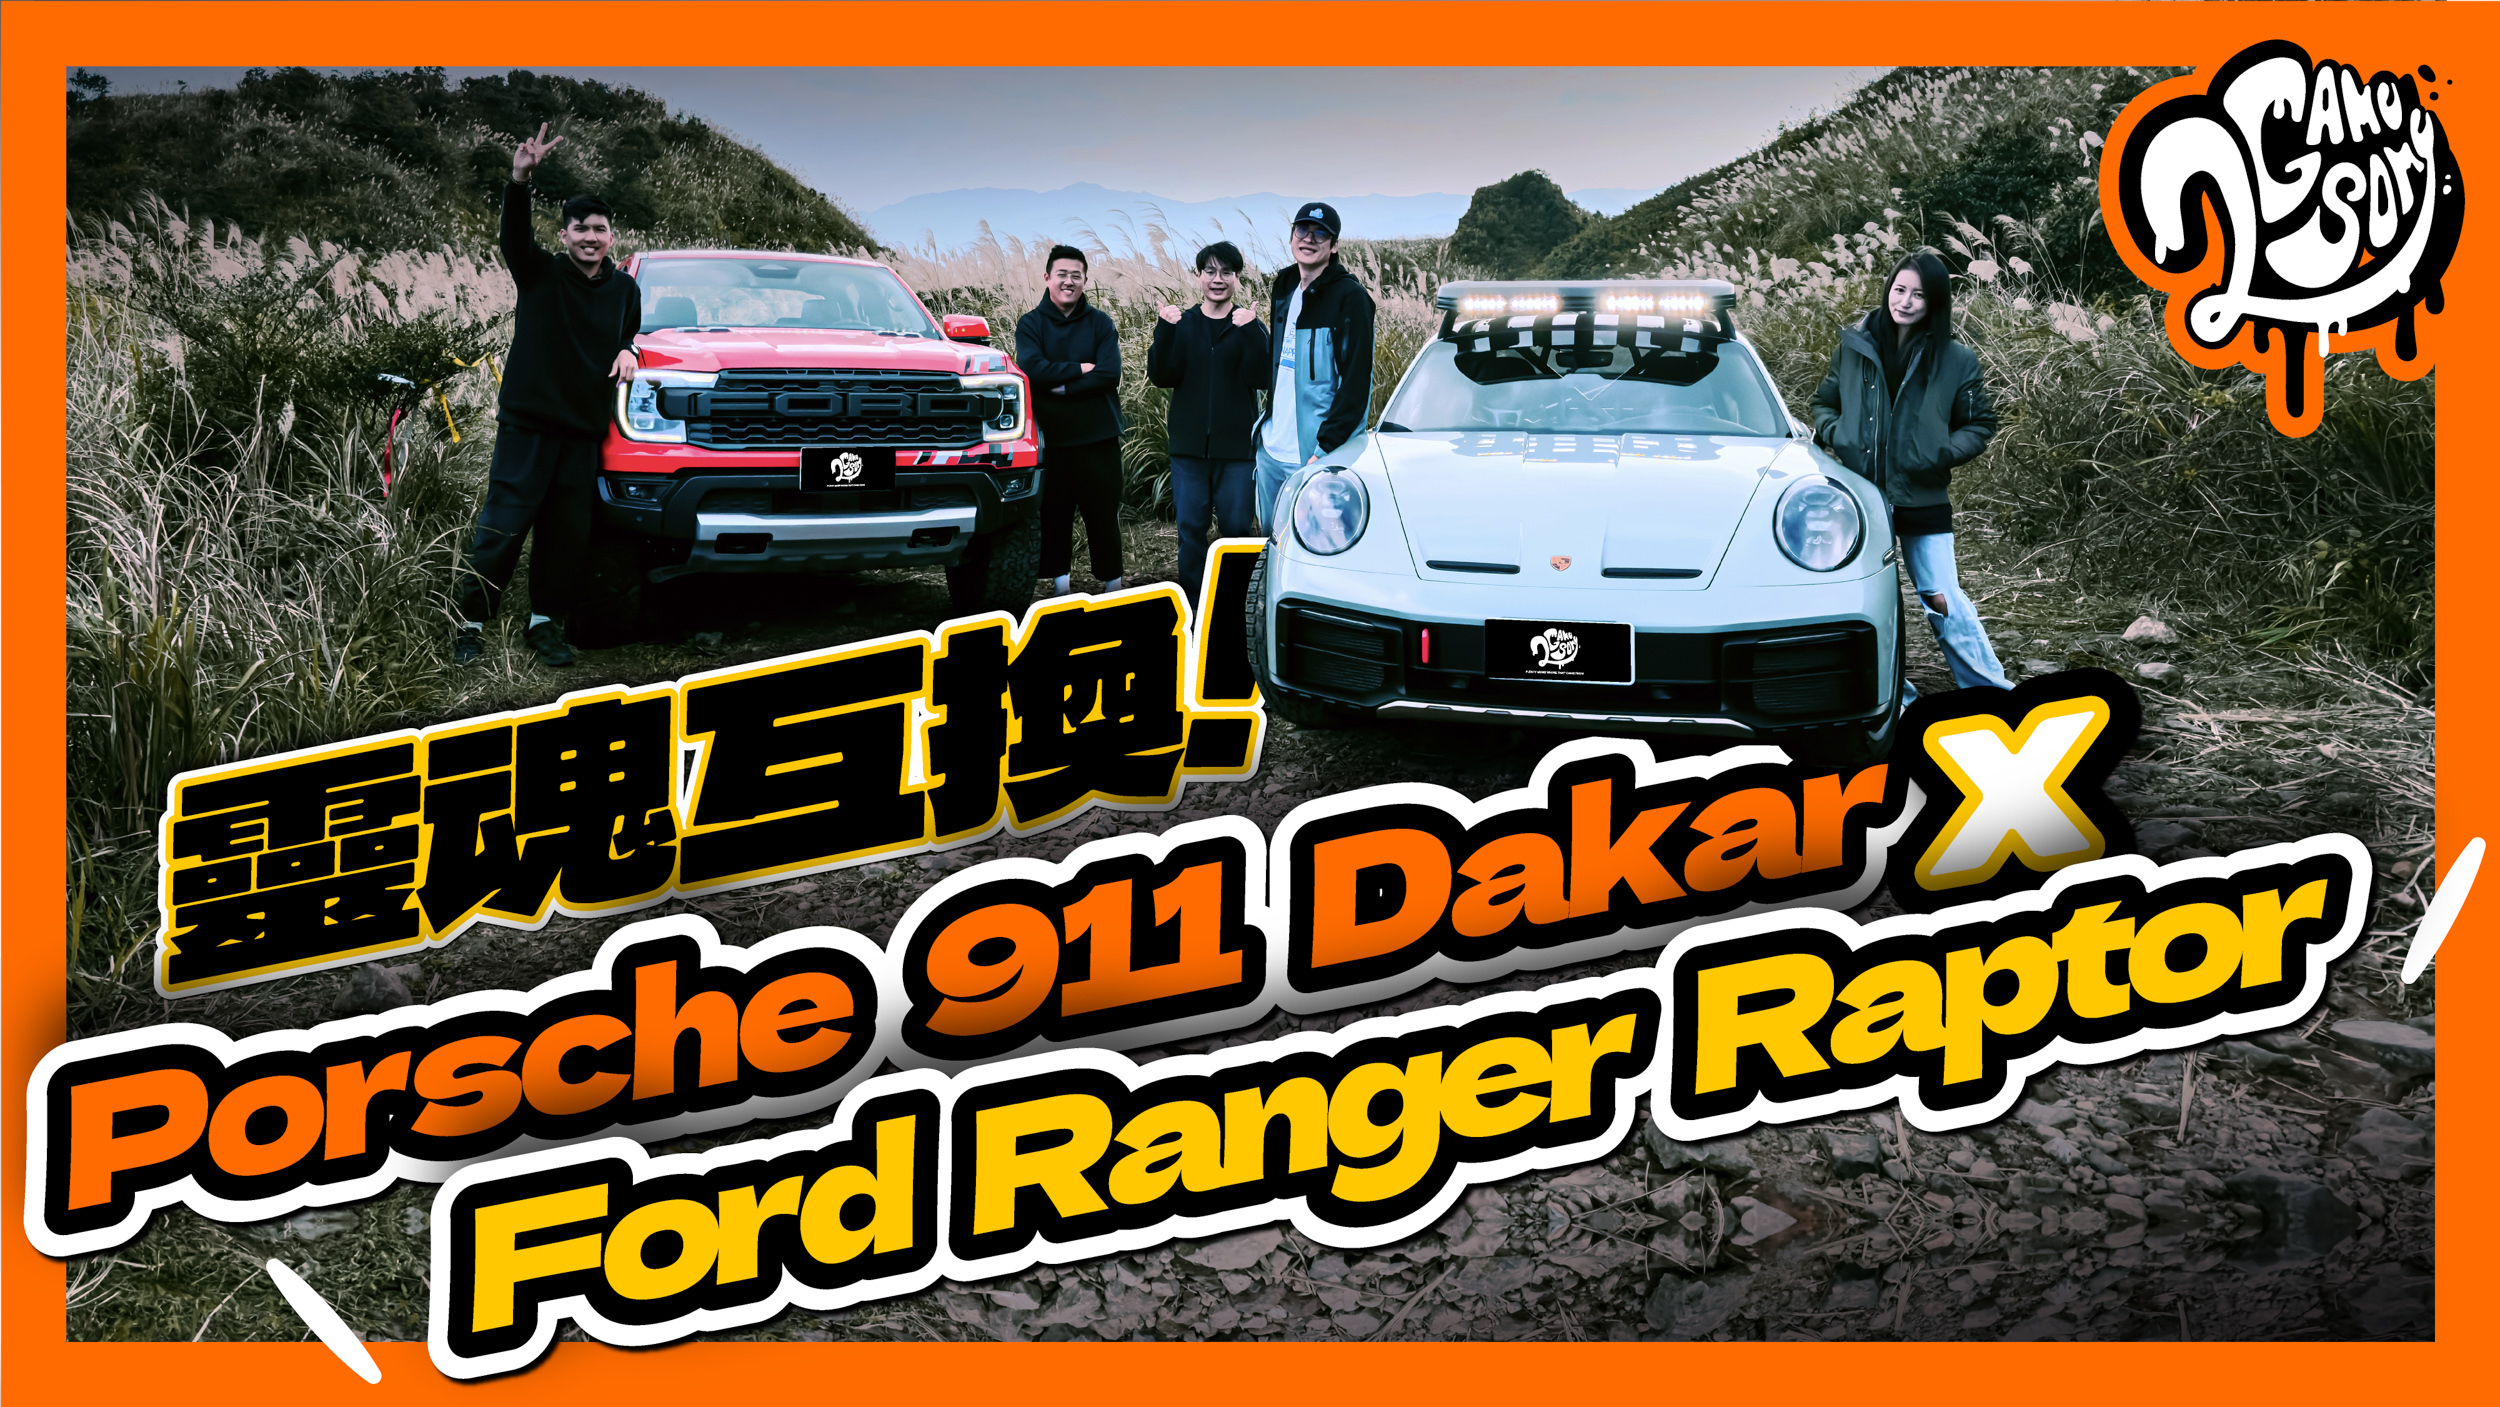 開著 Porsche 911 Dakar 想惡整 Ford Ranger Raptor？結局竟然出乎預料！關鍵在裝錯身體的靈魂！